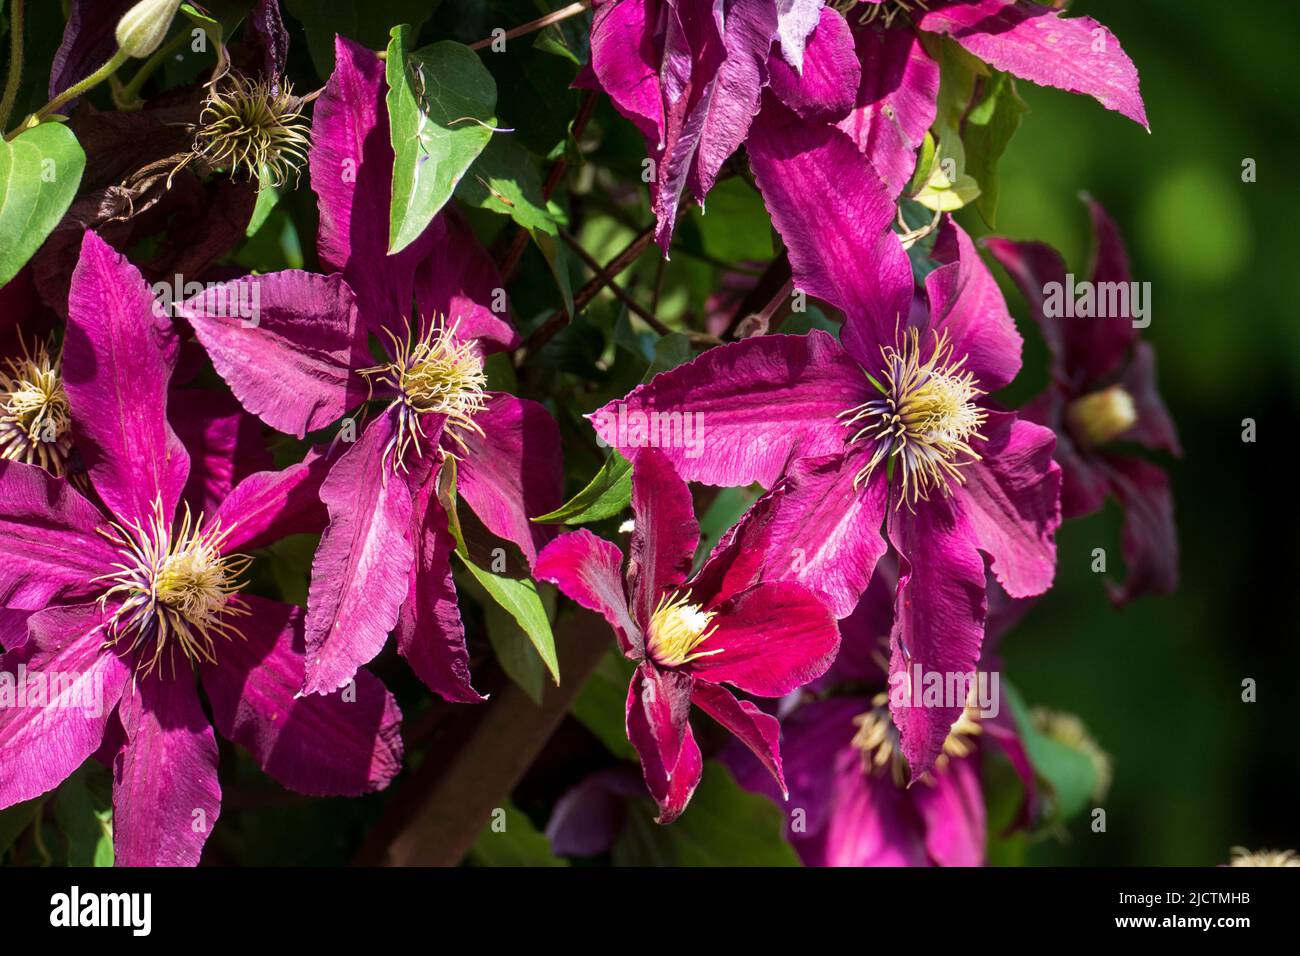 Violett farbene Clematis, Waldrebe Blüten wachsen an einem Holzbogen Stock Photo